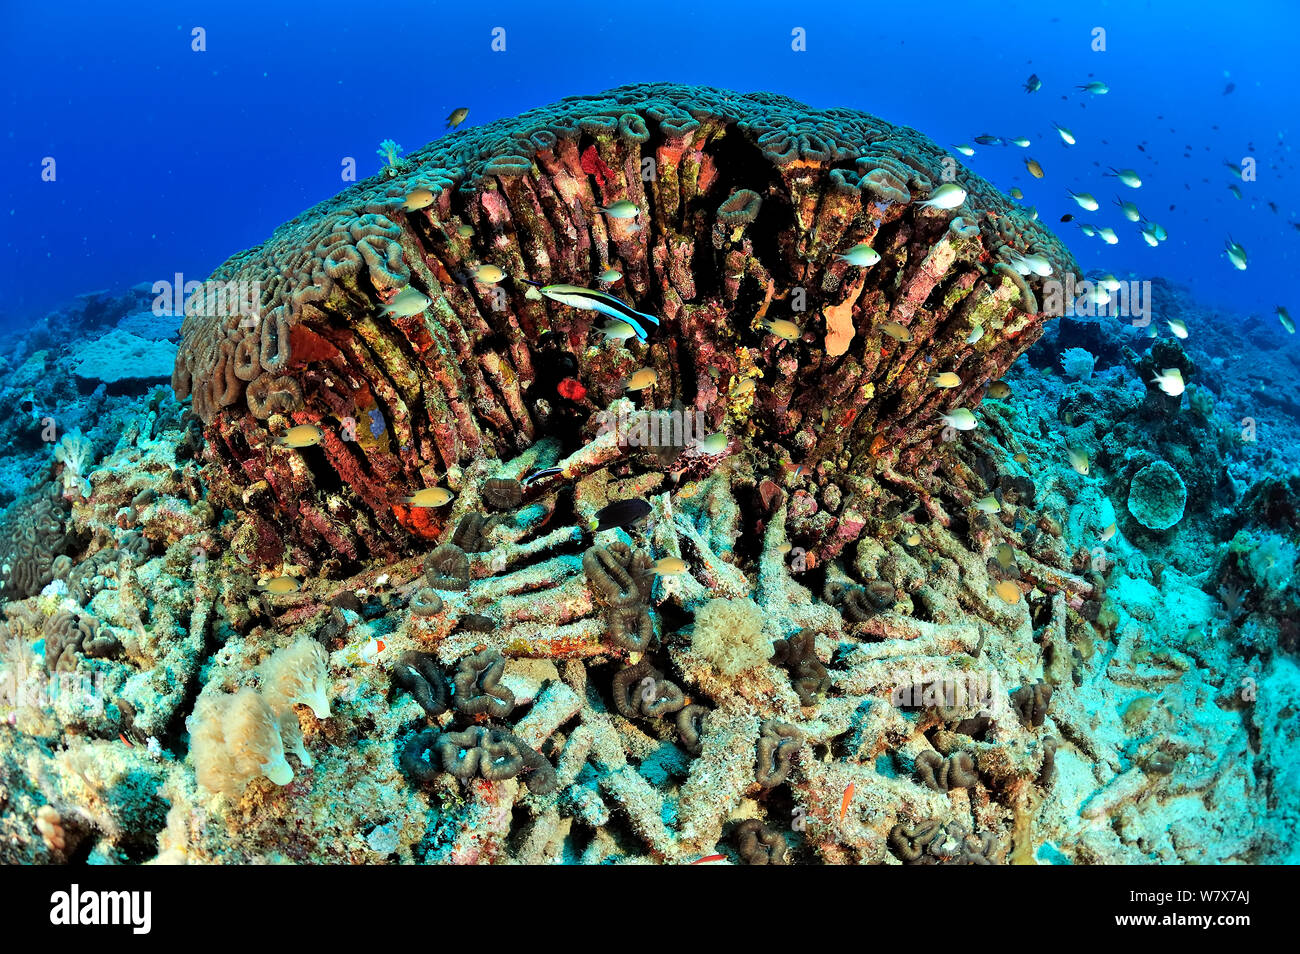 Corallo duro (Lobophyllia) mezzo morto con pesci nuotare intorno, Madagascar. Oceano Indiano. Foto Stock